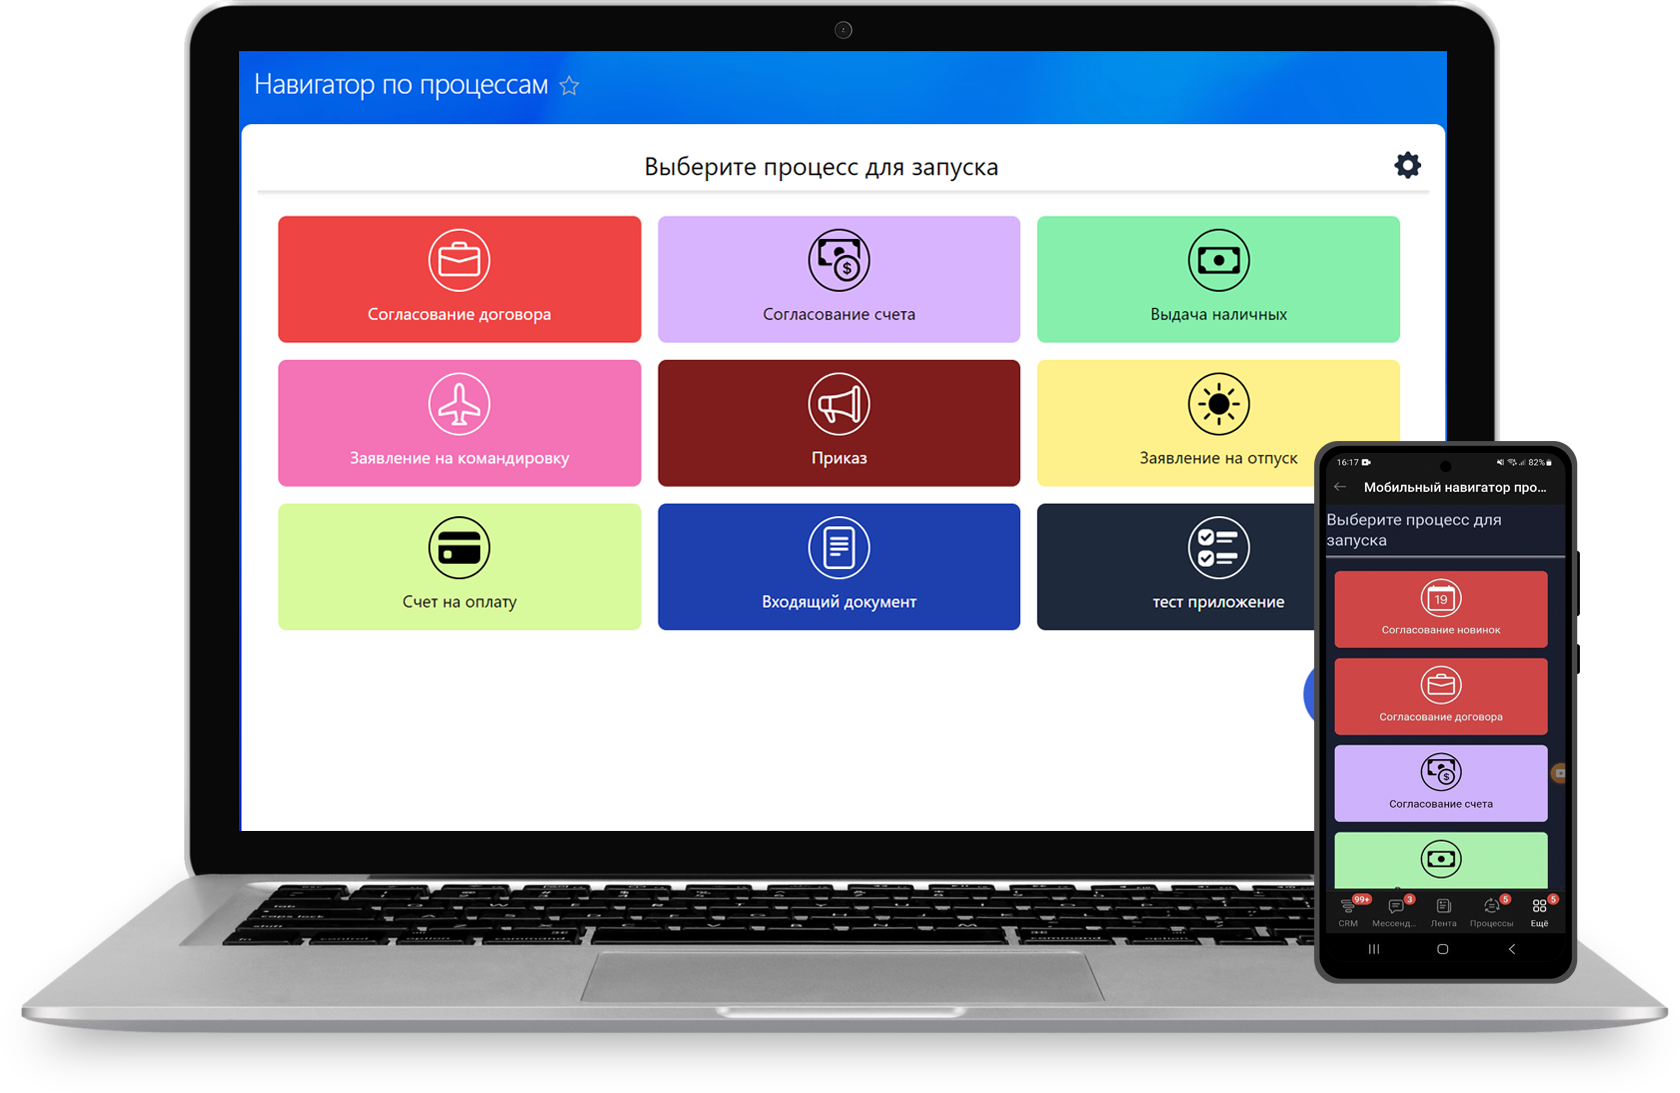 Бизнес Процессы мобильный навигатор процессов приложение Smart Бизнес Смарт автоматизация